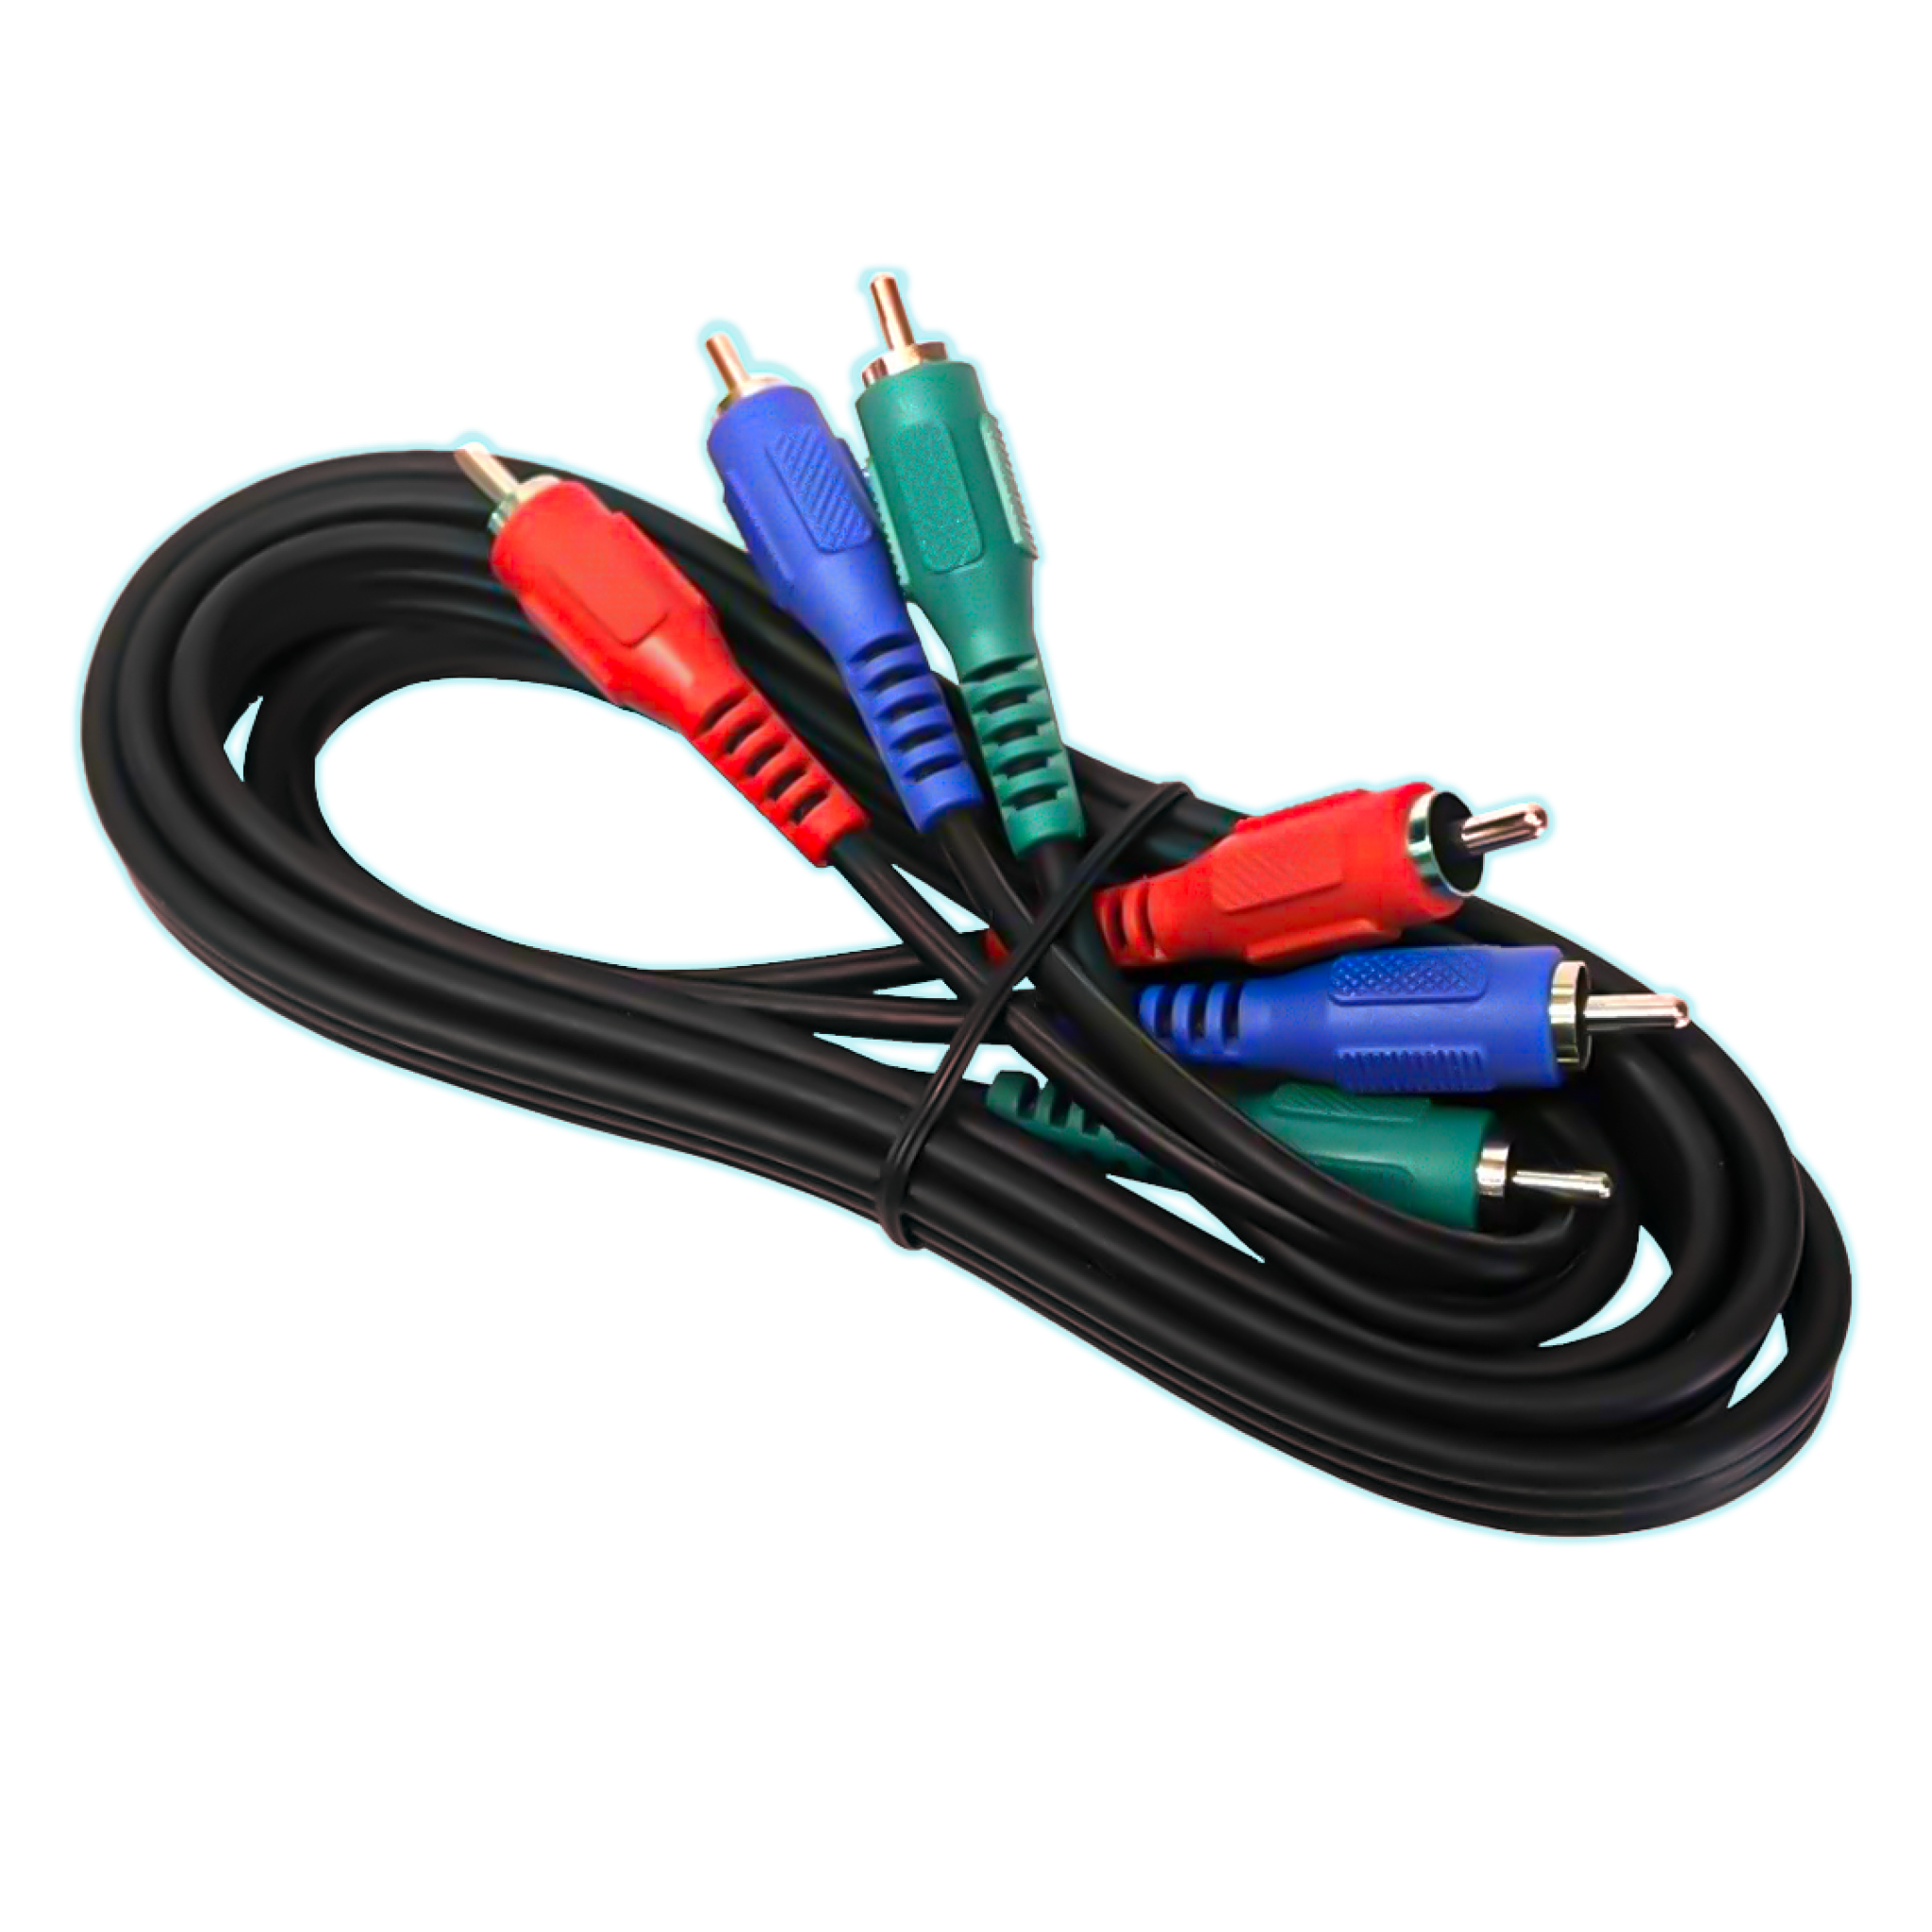 Comprar Cable RCA a Jack - Cables y Cargadores - Imagen y Audio